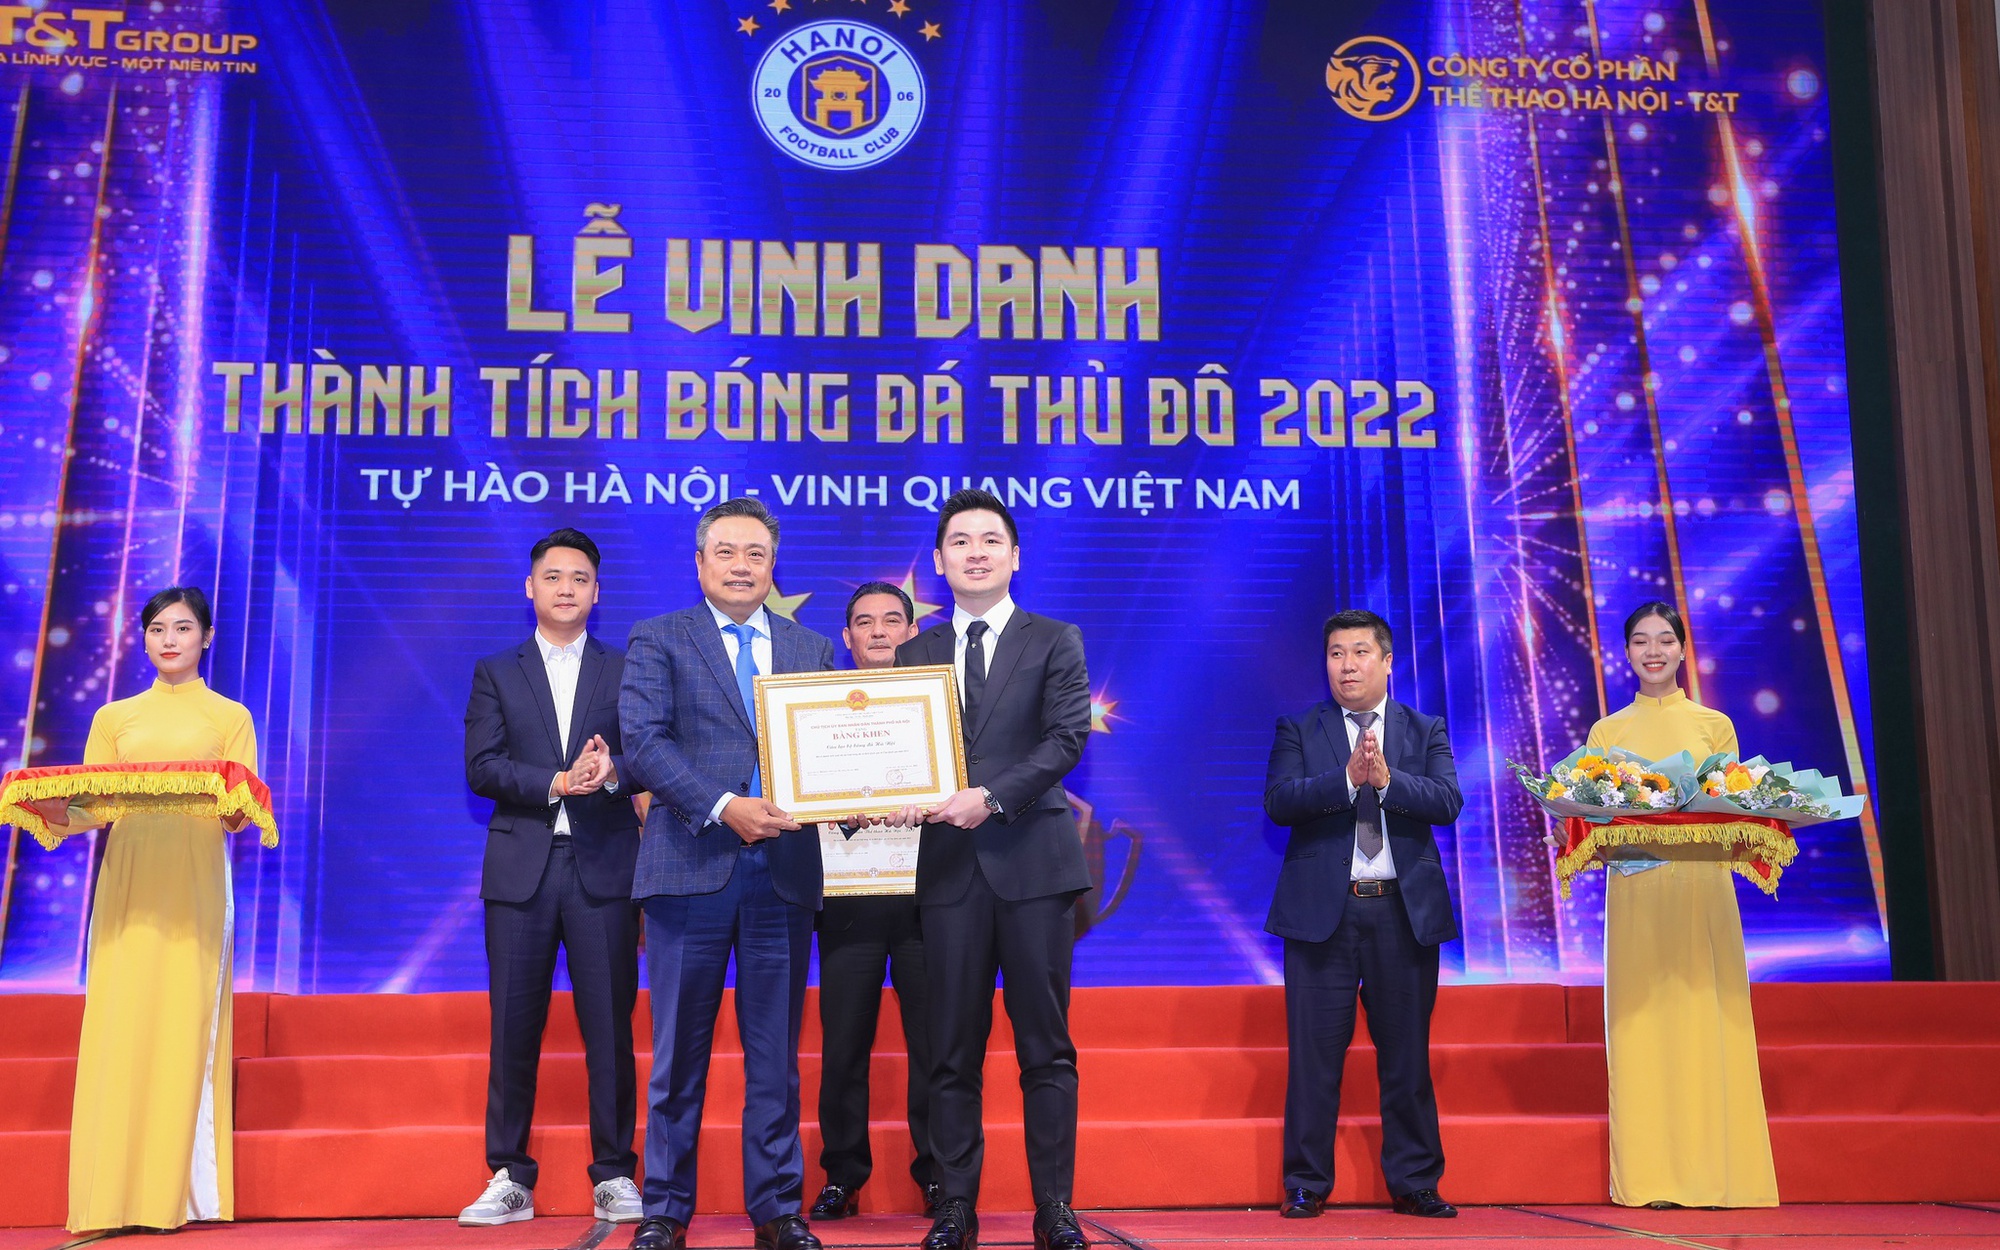 Chủ tịch Đỗ Vinh Quang: "Chúng tôi chỉ có 1 ngôi sao duy nhất là CLB Hà Nội"